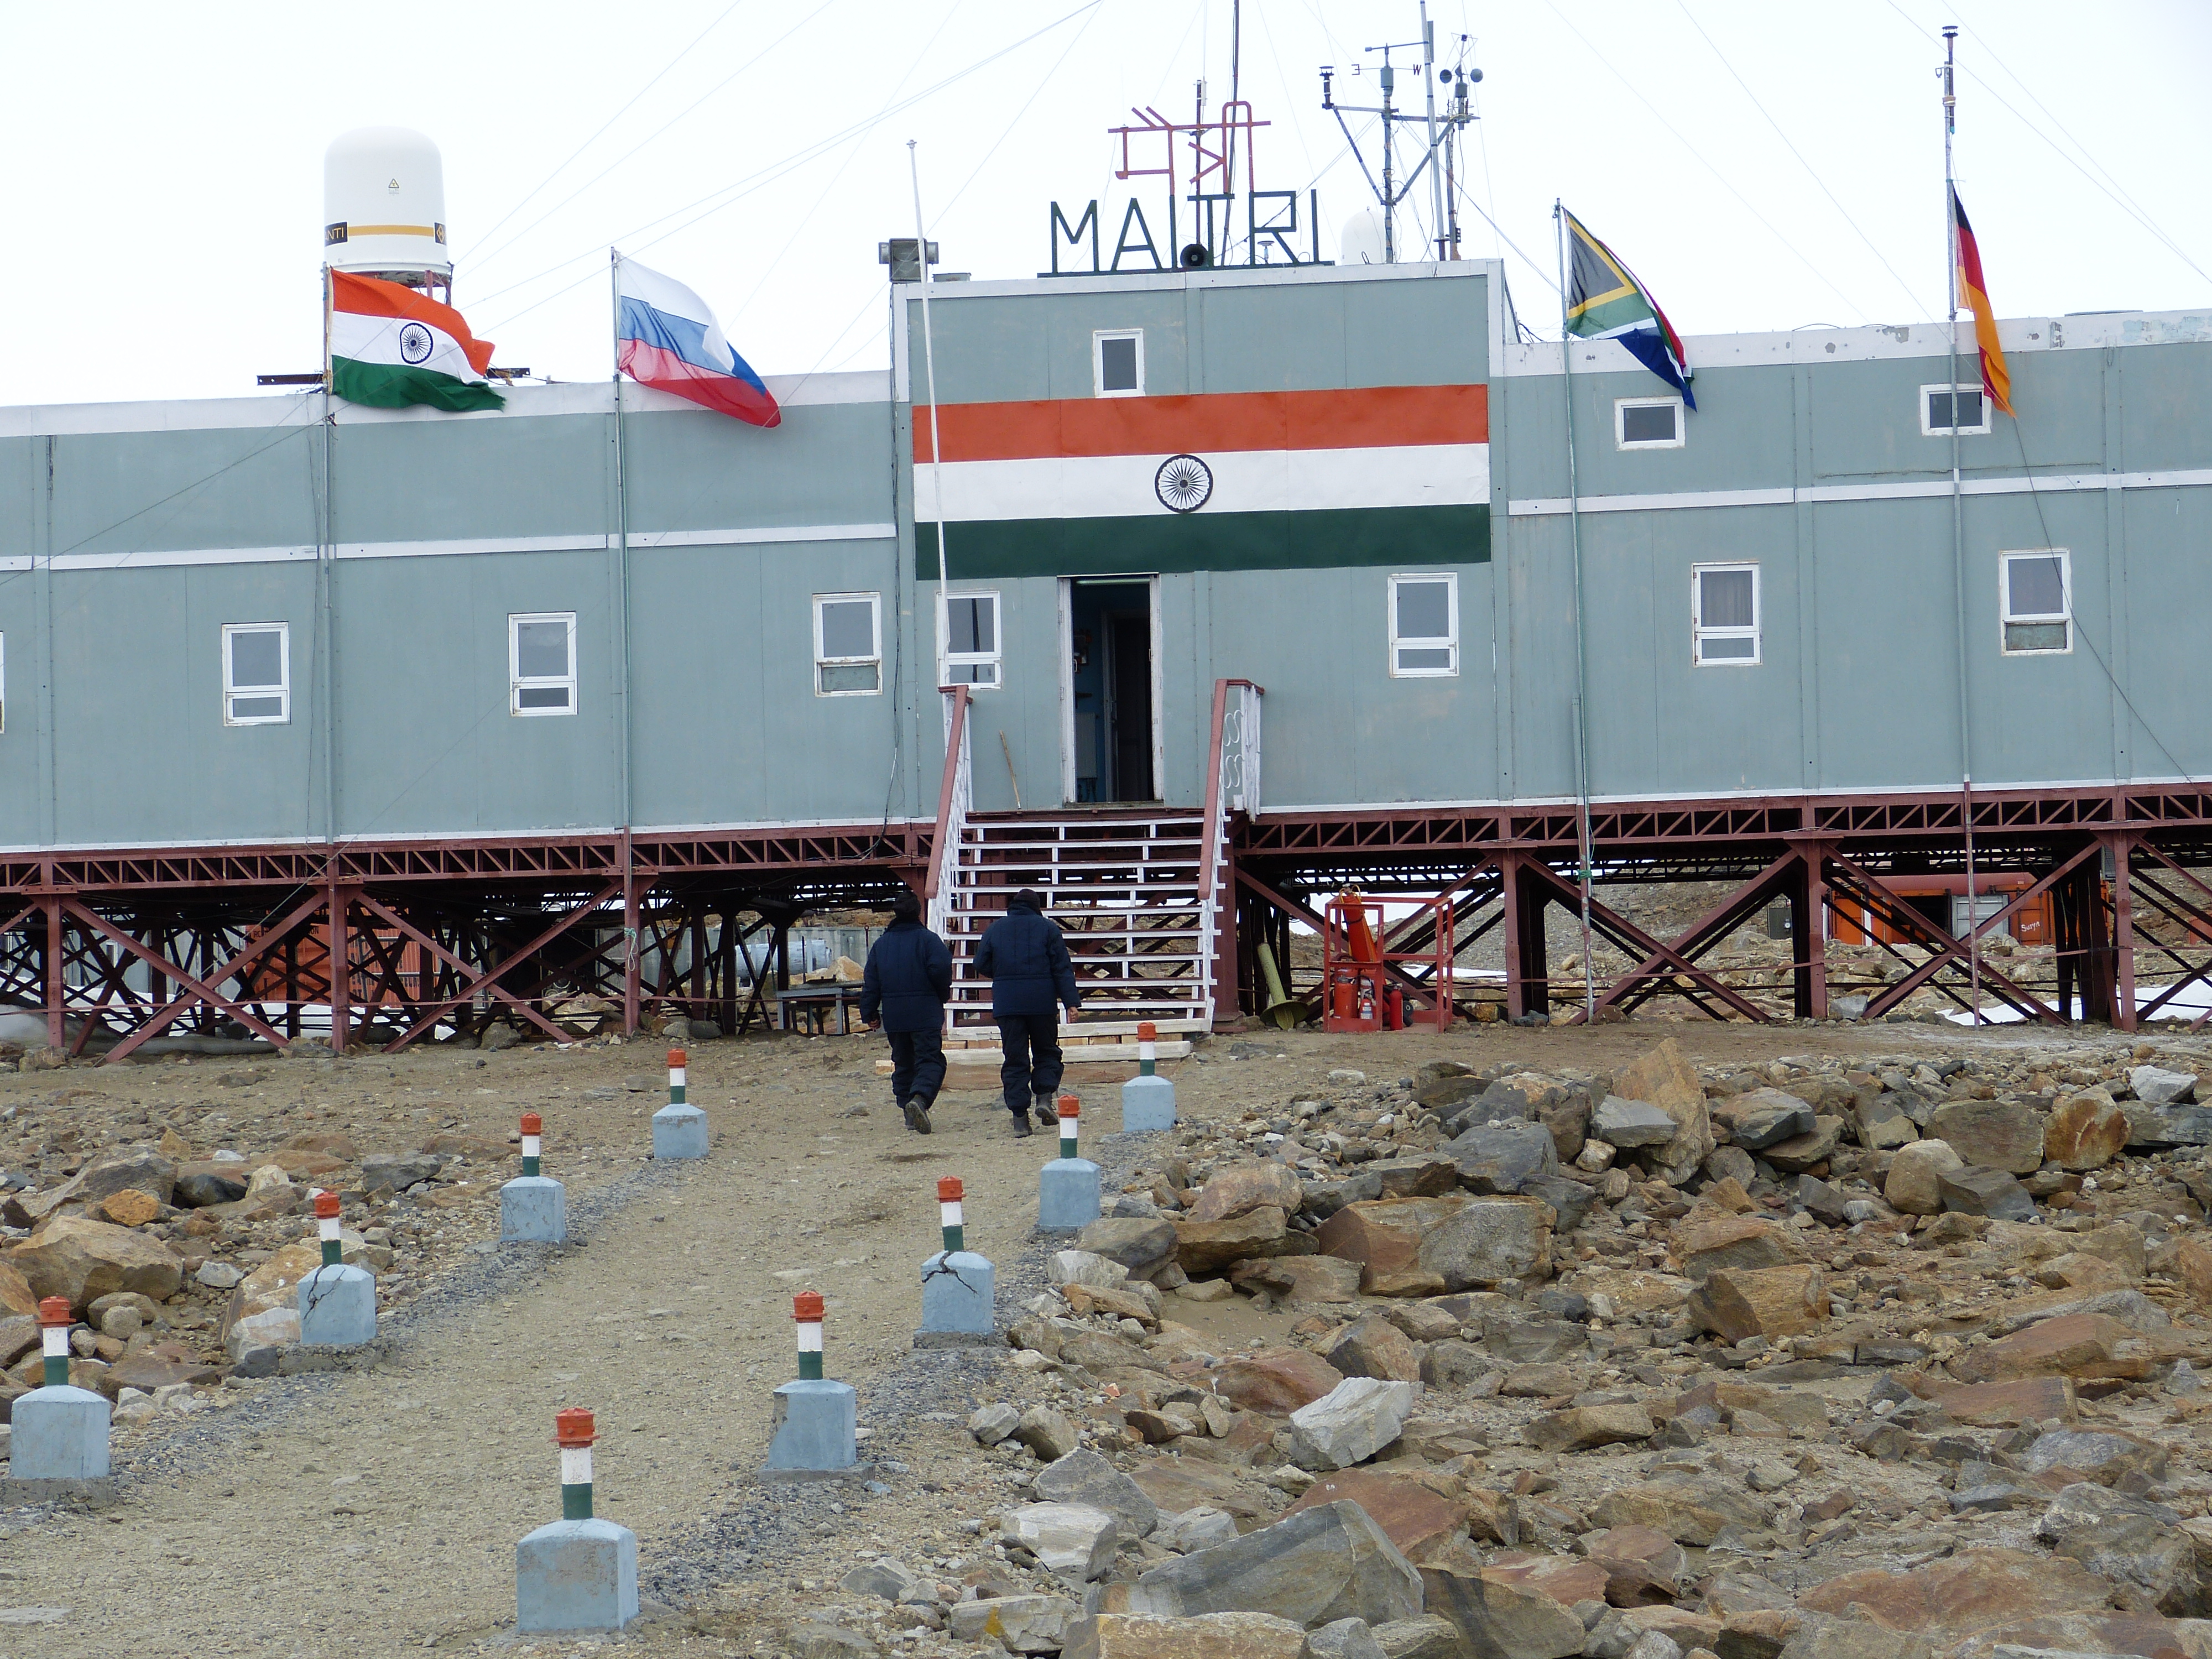 Im Bild ist die indische Forschungsstation auf deren Dach der Name der Station, "Maitri" steht. Davor stehen die Flaggen 4 anderer Länder. " Personen laufen auf die Station zu. 